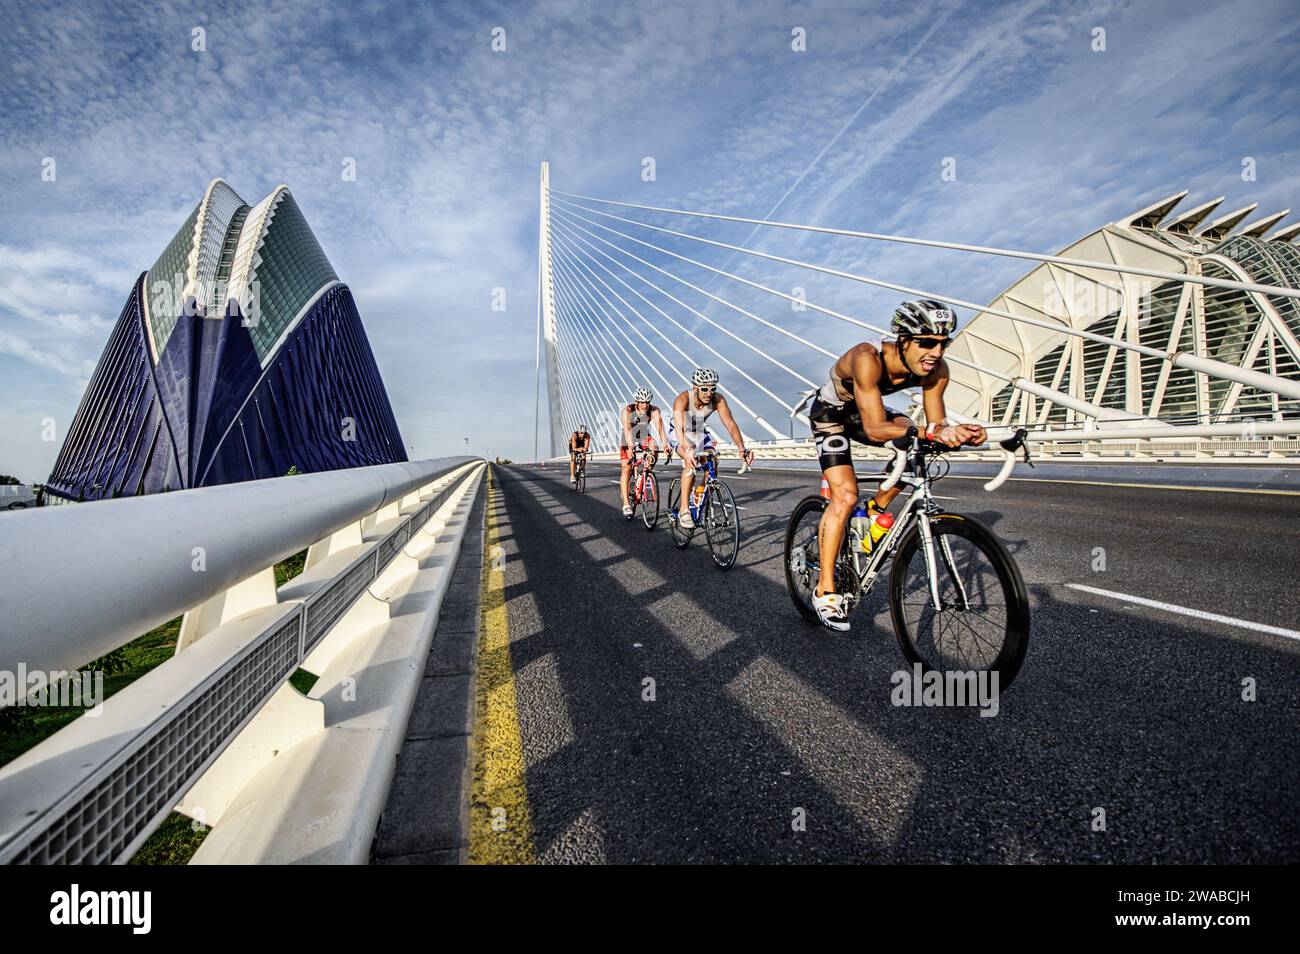 Cyclistes participant à un triathlon sur le pont moderne de la Cité des Arts et des Sciences de Valence alliant sport et architecture Banque D'Images